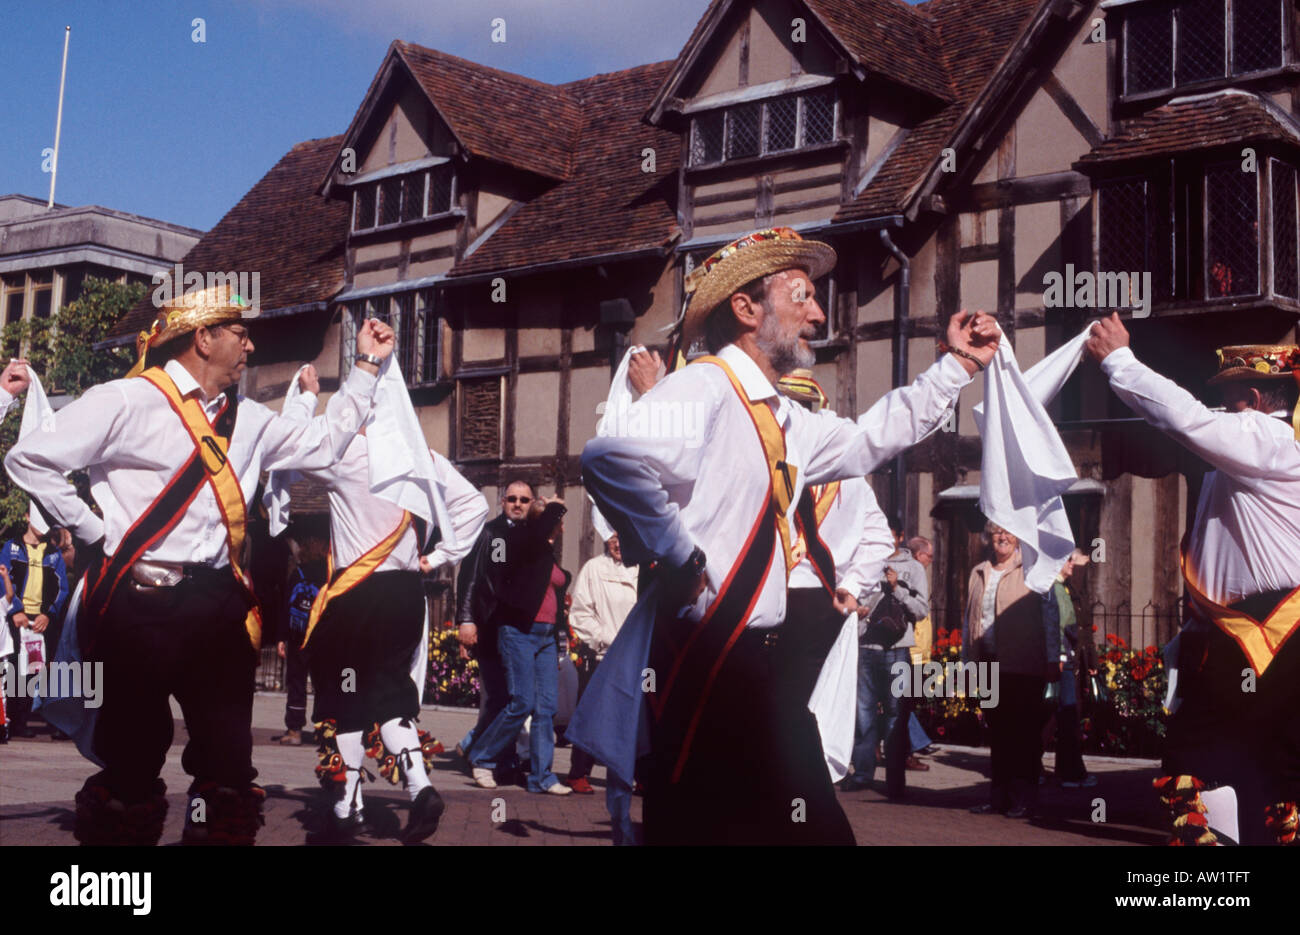 Morris Men dancing avec des mouchoirs blancs en face de la maison, le lieu de naissance de Shakespeare de Stratford-upon-Avon, Angleterre Banque D'Images